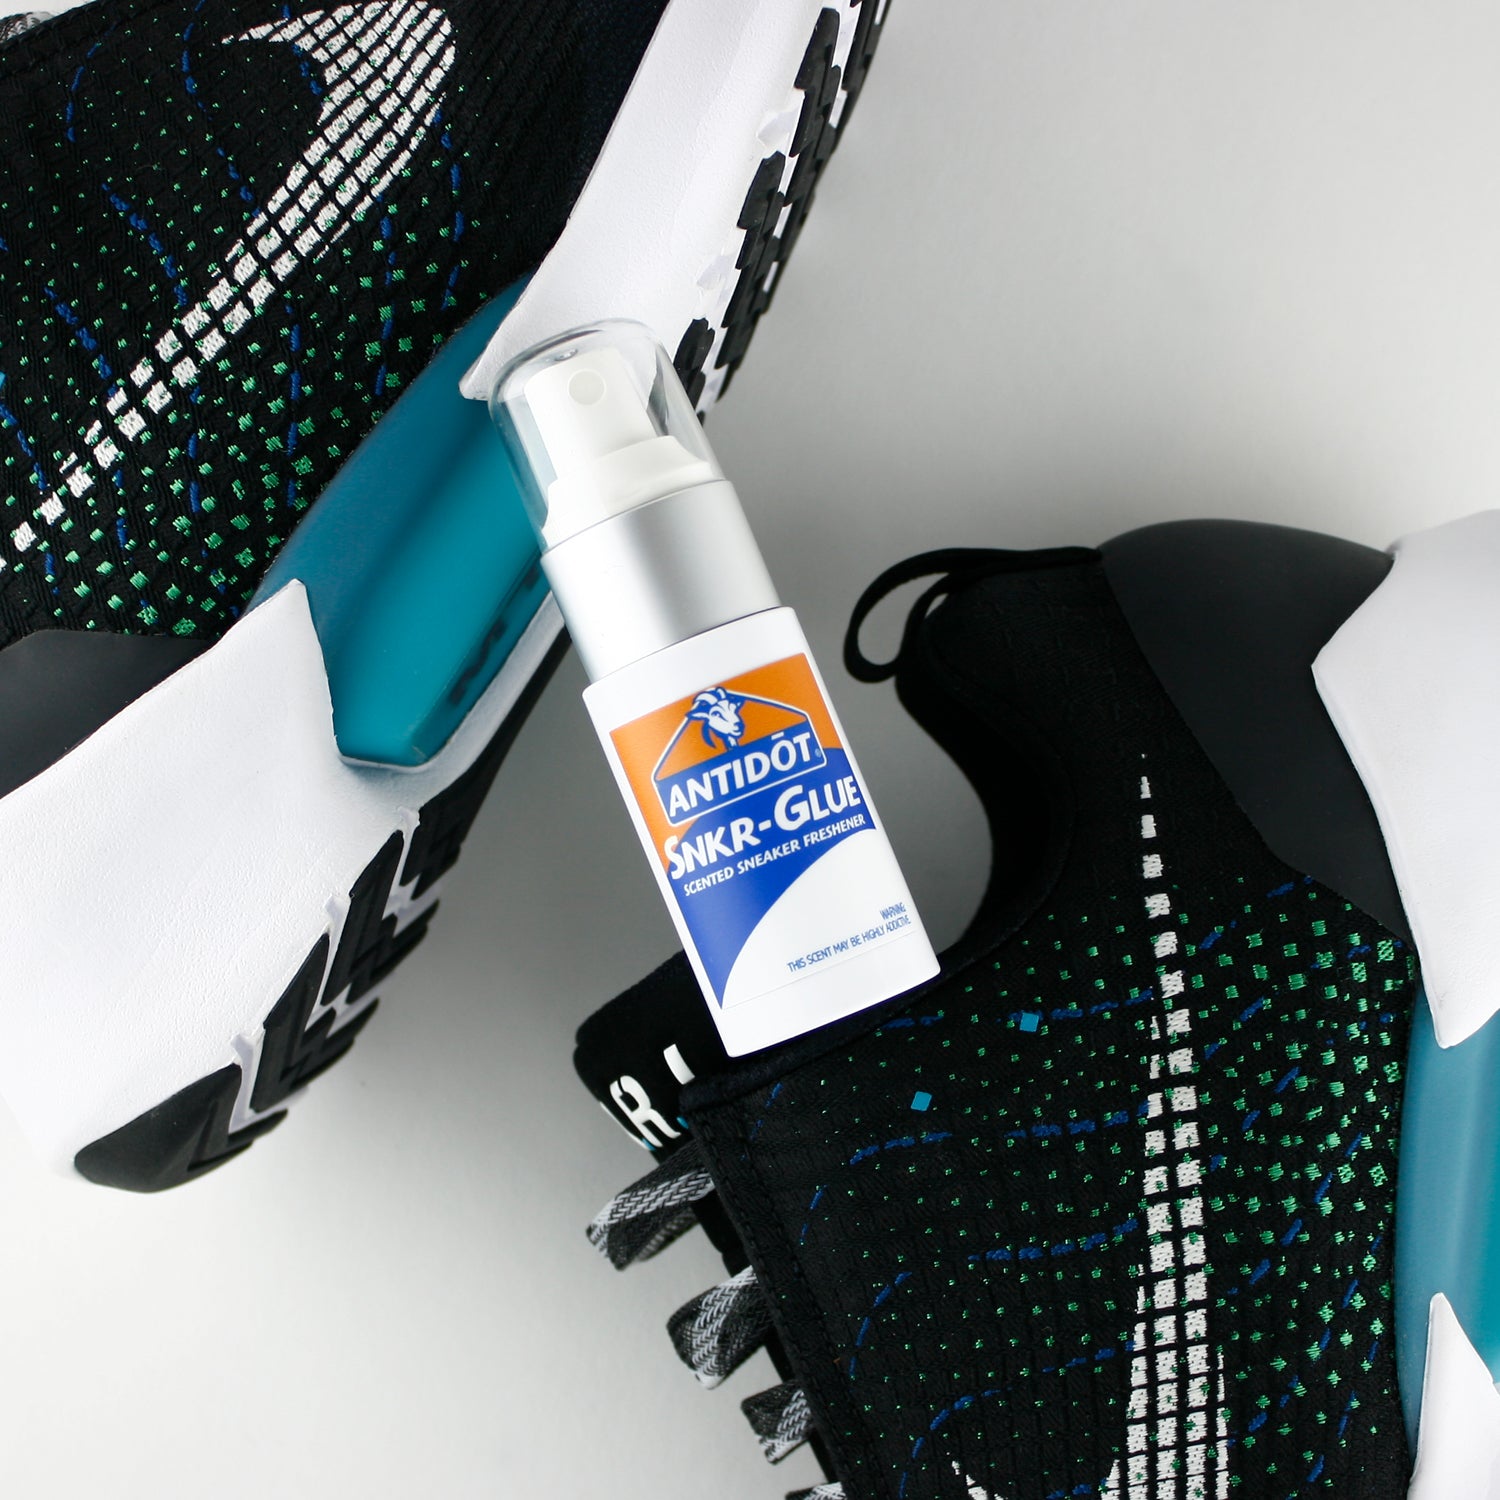 ANTIDŌT® - SNKR-Glue  [Deadstock Glue] 1 oz. Pocket Size - solscience®  Sneaker Deodorizer Spray